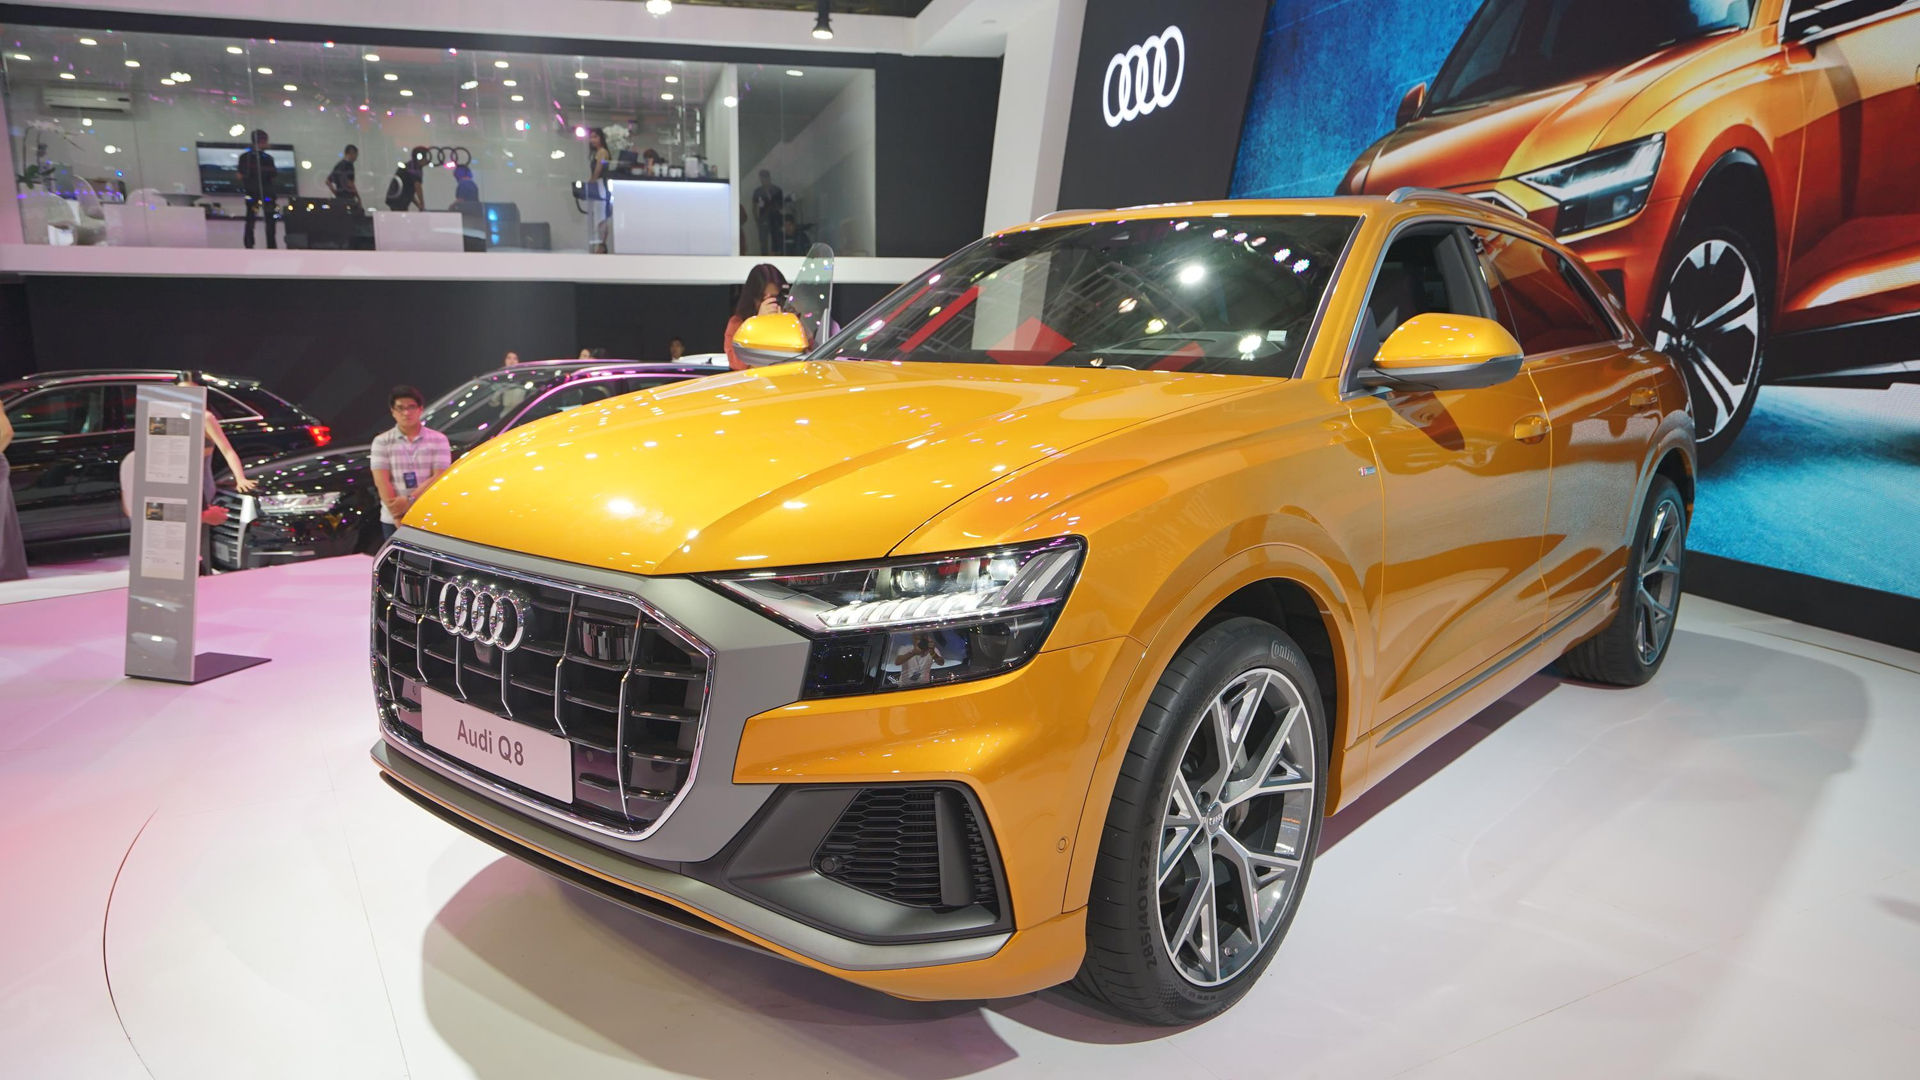 Ngoại thất Audi Q8 thể hiện ngôn ngữ thiết kế hoàn toàn mới.